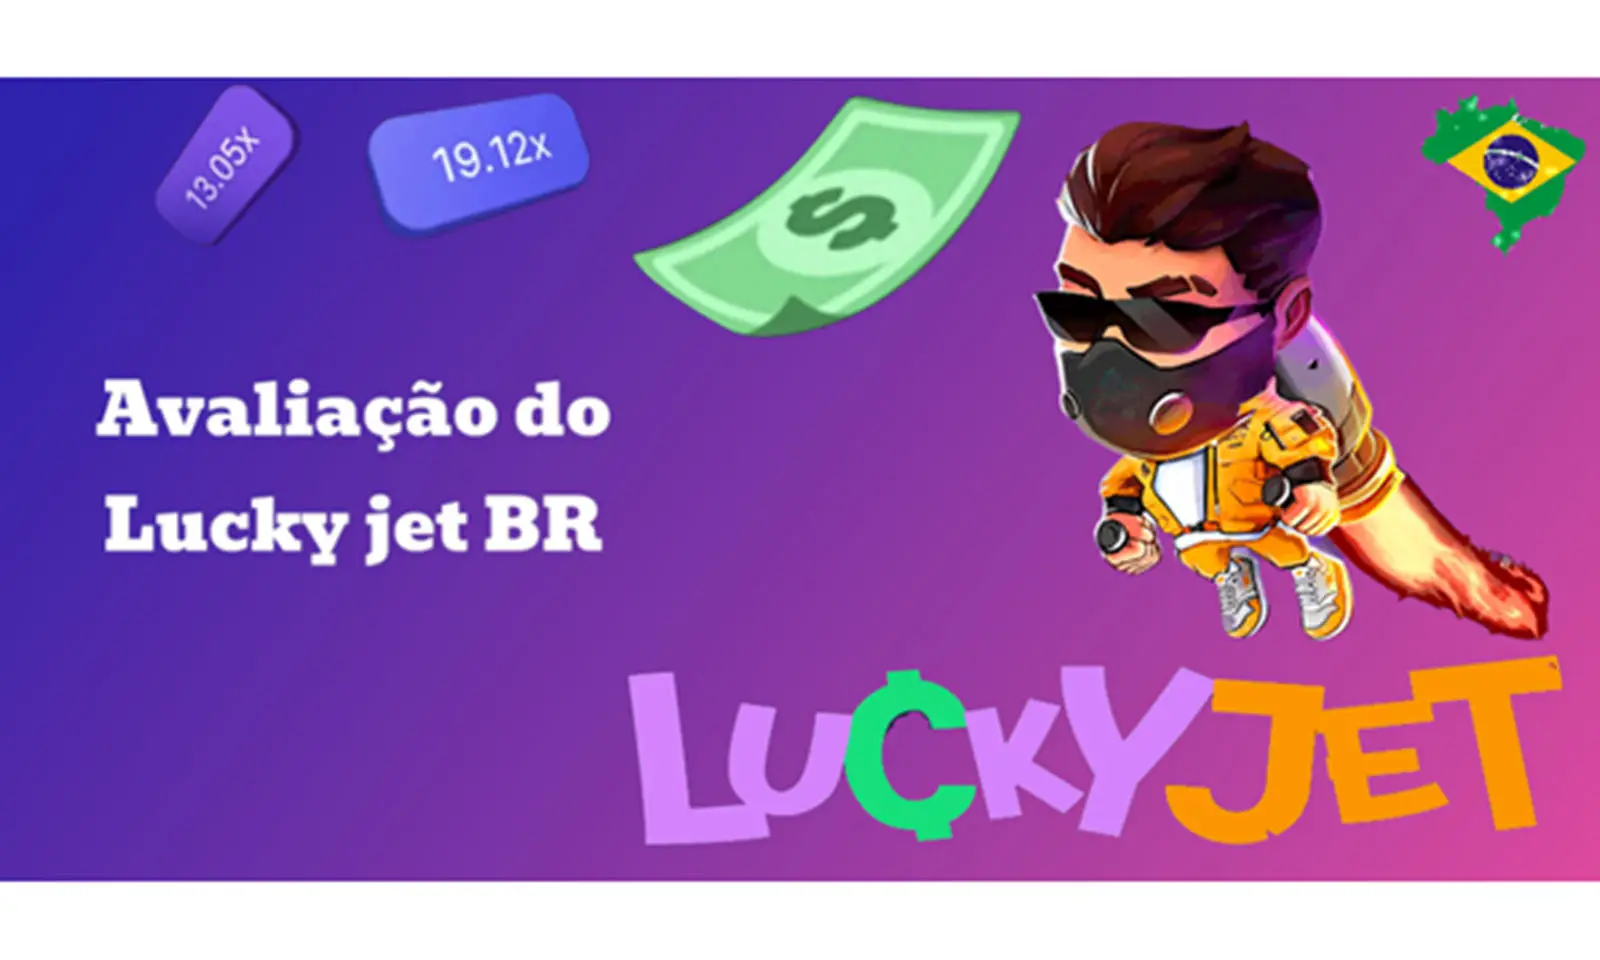 Lucky jet no Brasil: Características do jogo